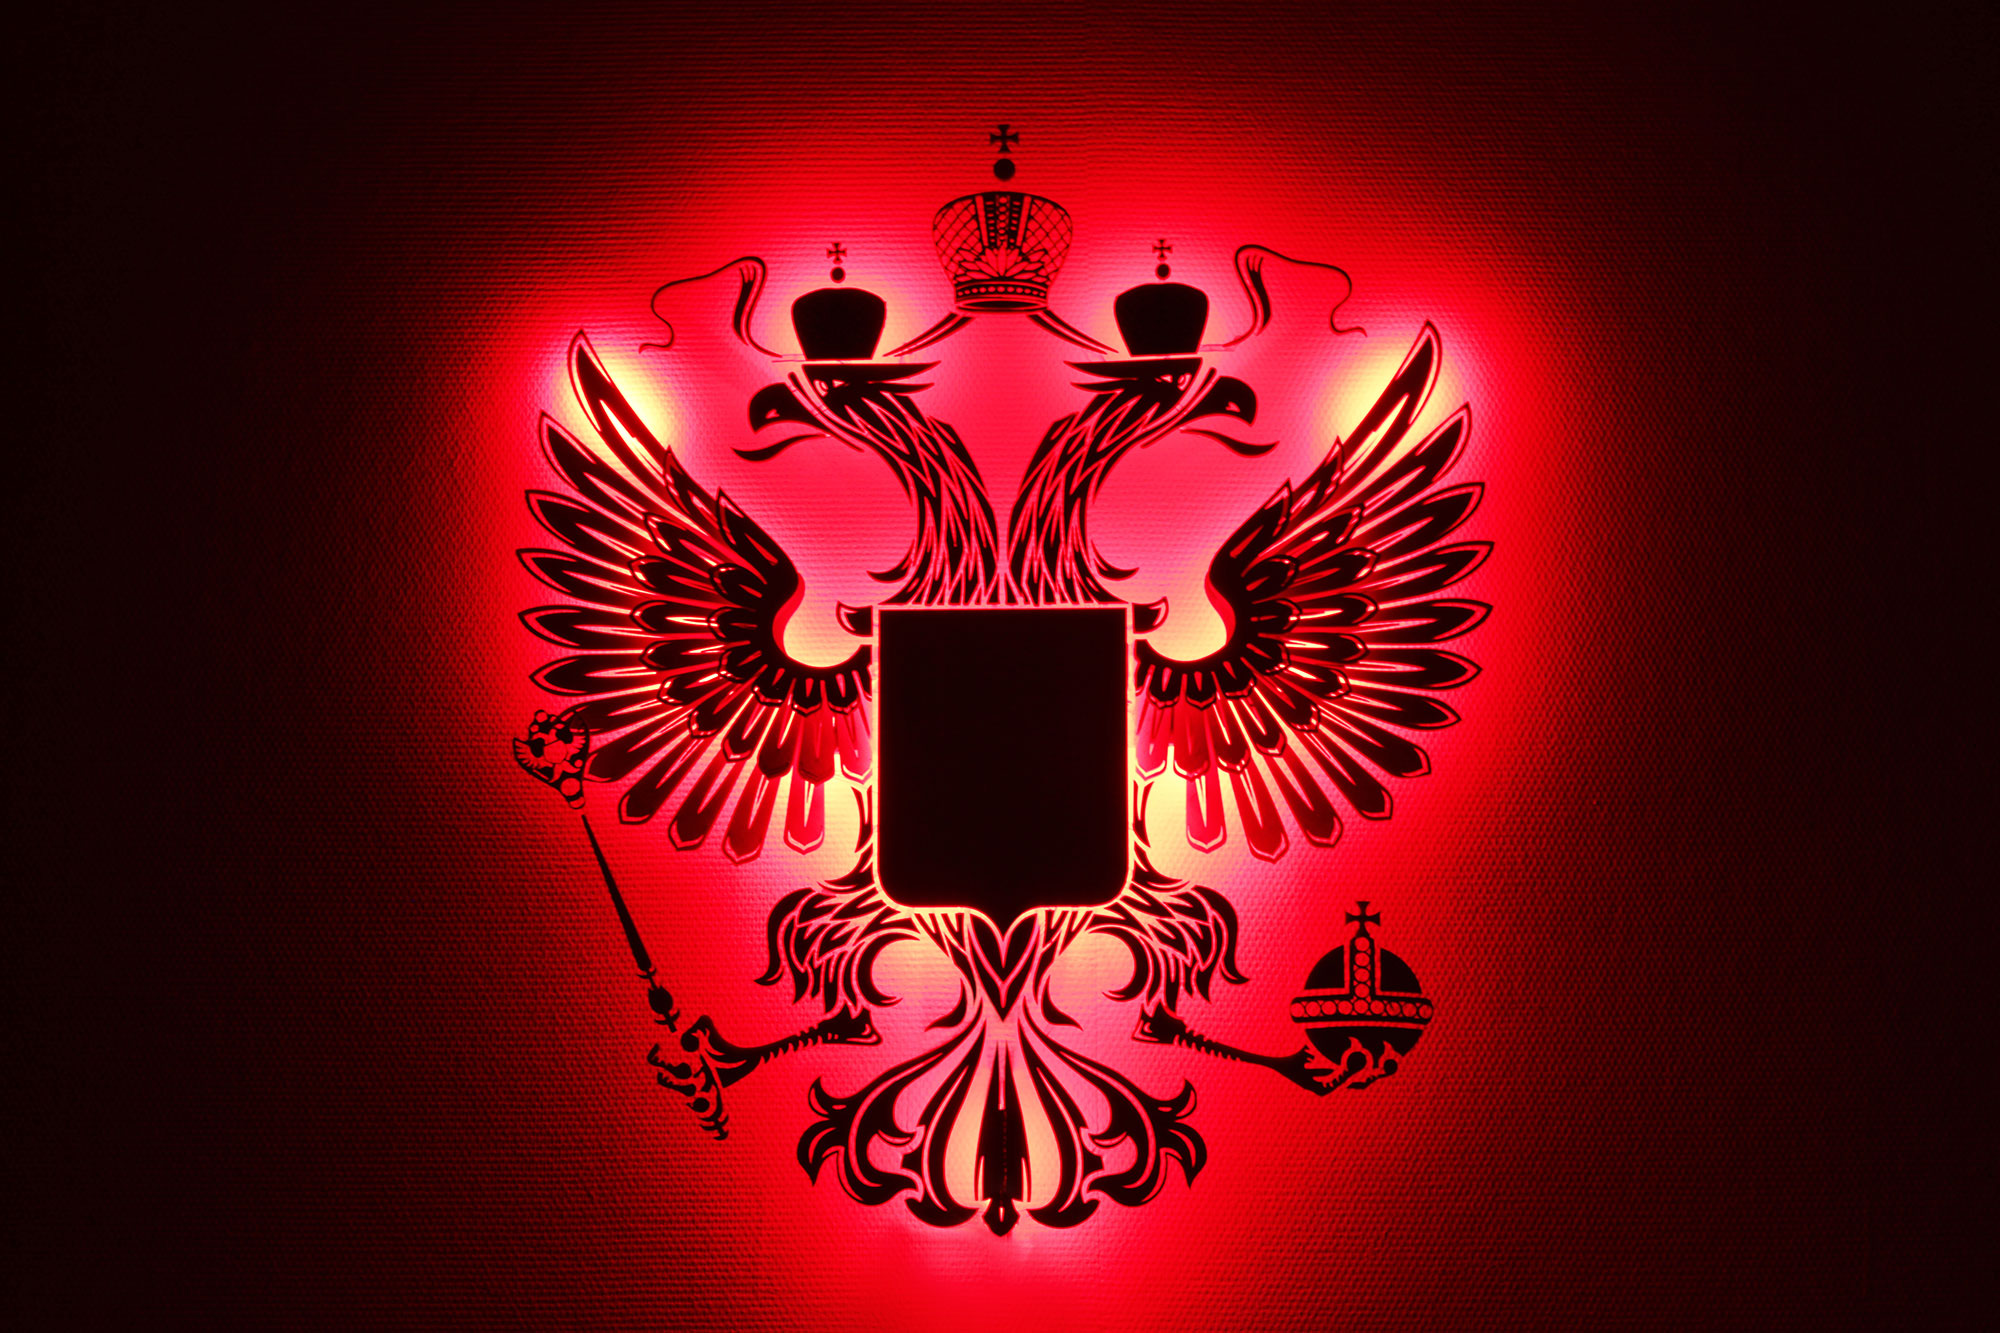 Герб страны Россия печатный на сатене щит дерево